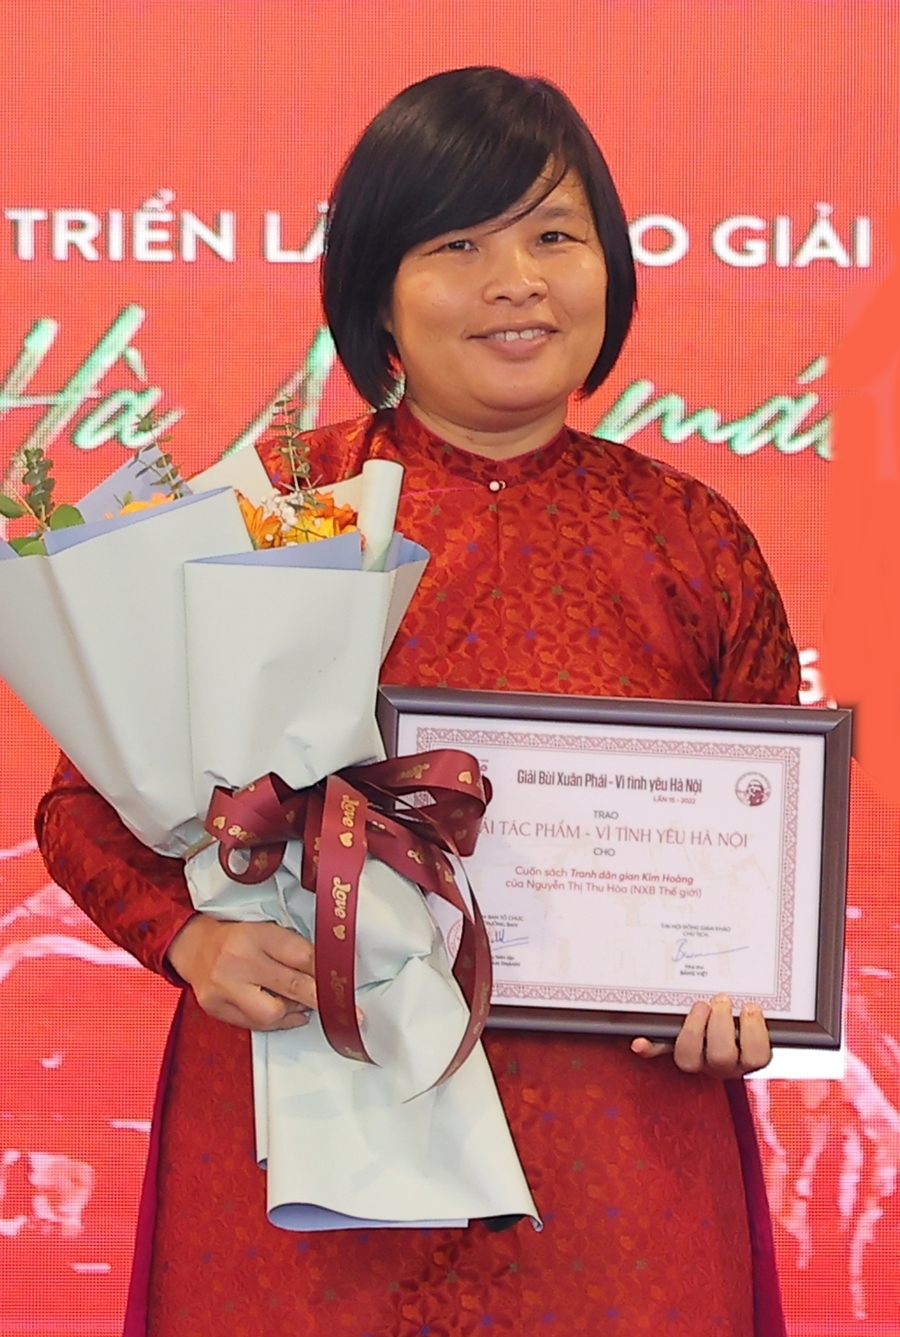 Trao Giải thưởng “Bùi Xuân Phái - Vì Tình yêu Hà Nội” năm 2022